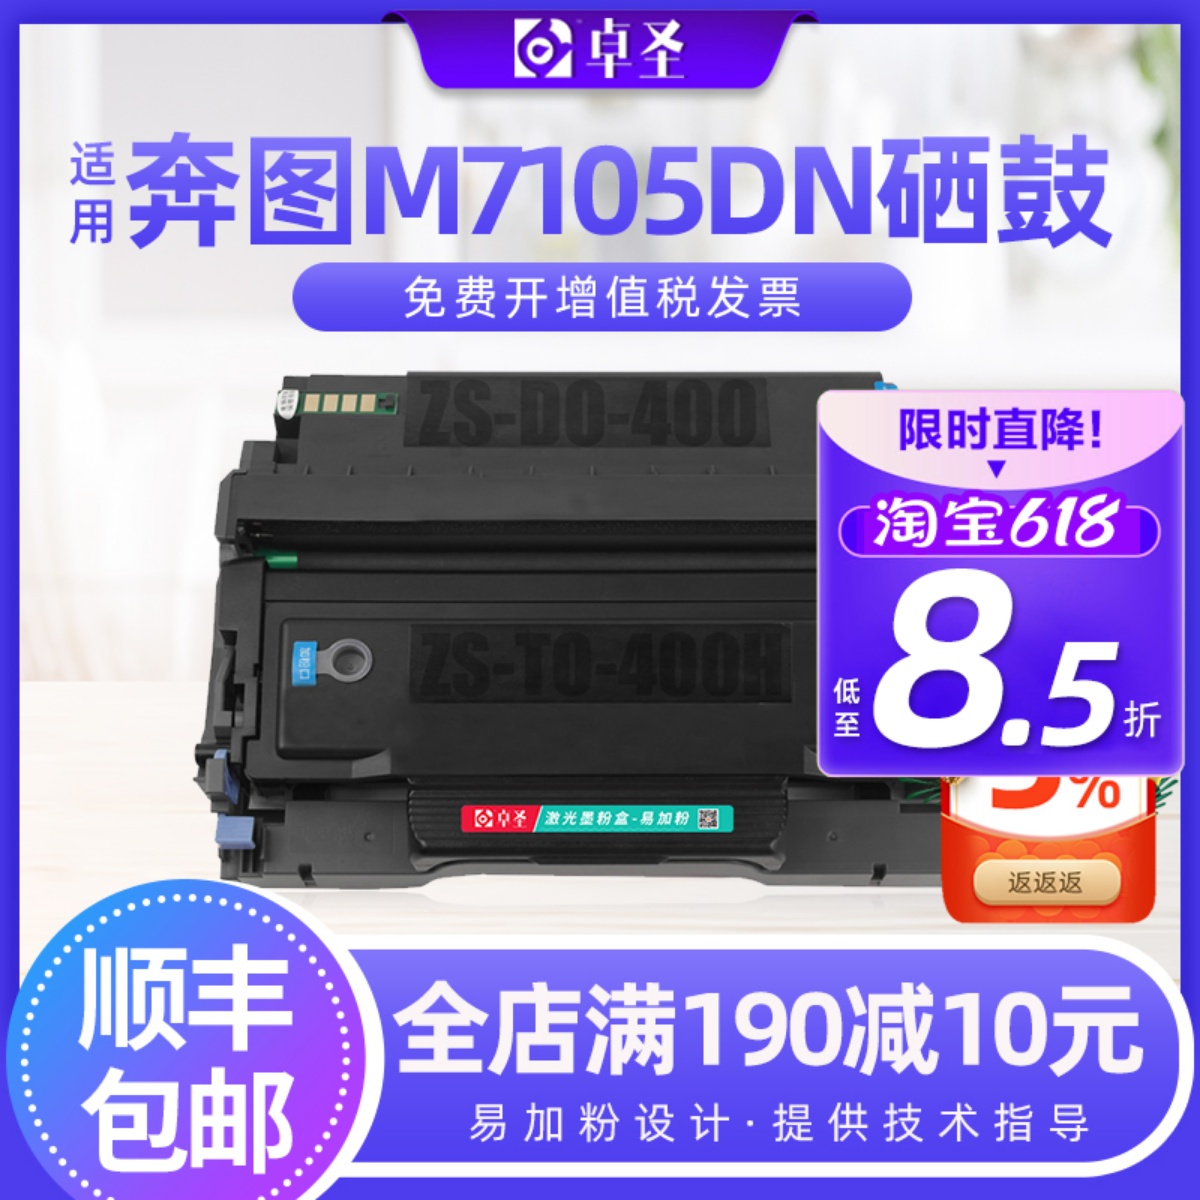 适用奔图m7105dn粉盒激光打印机